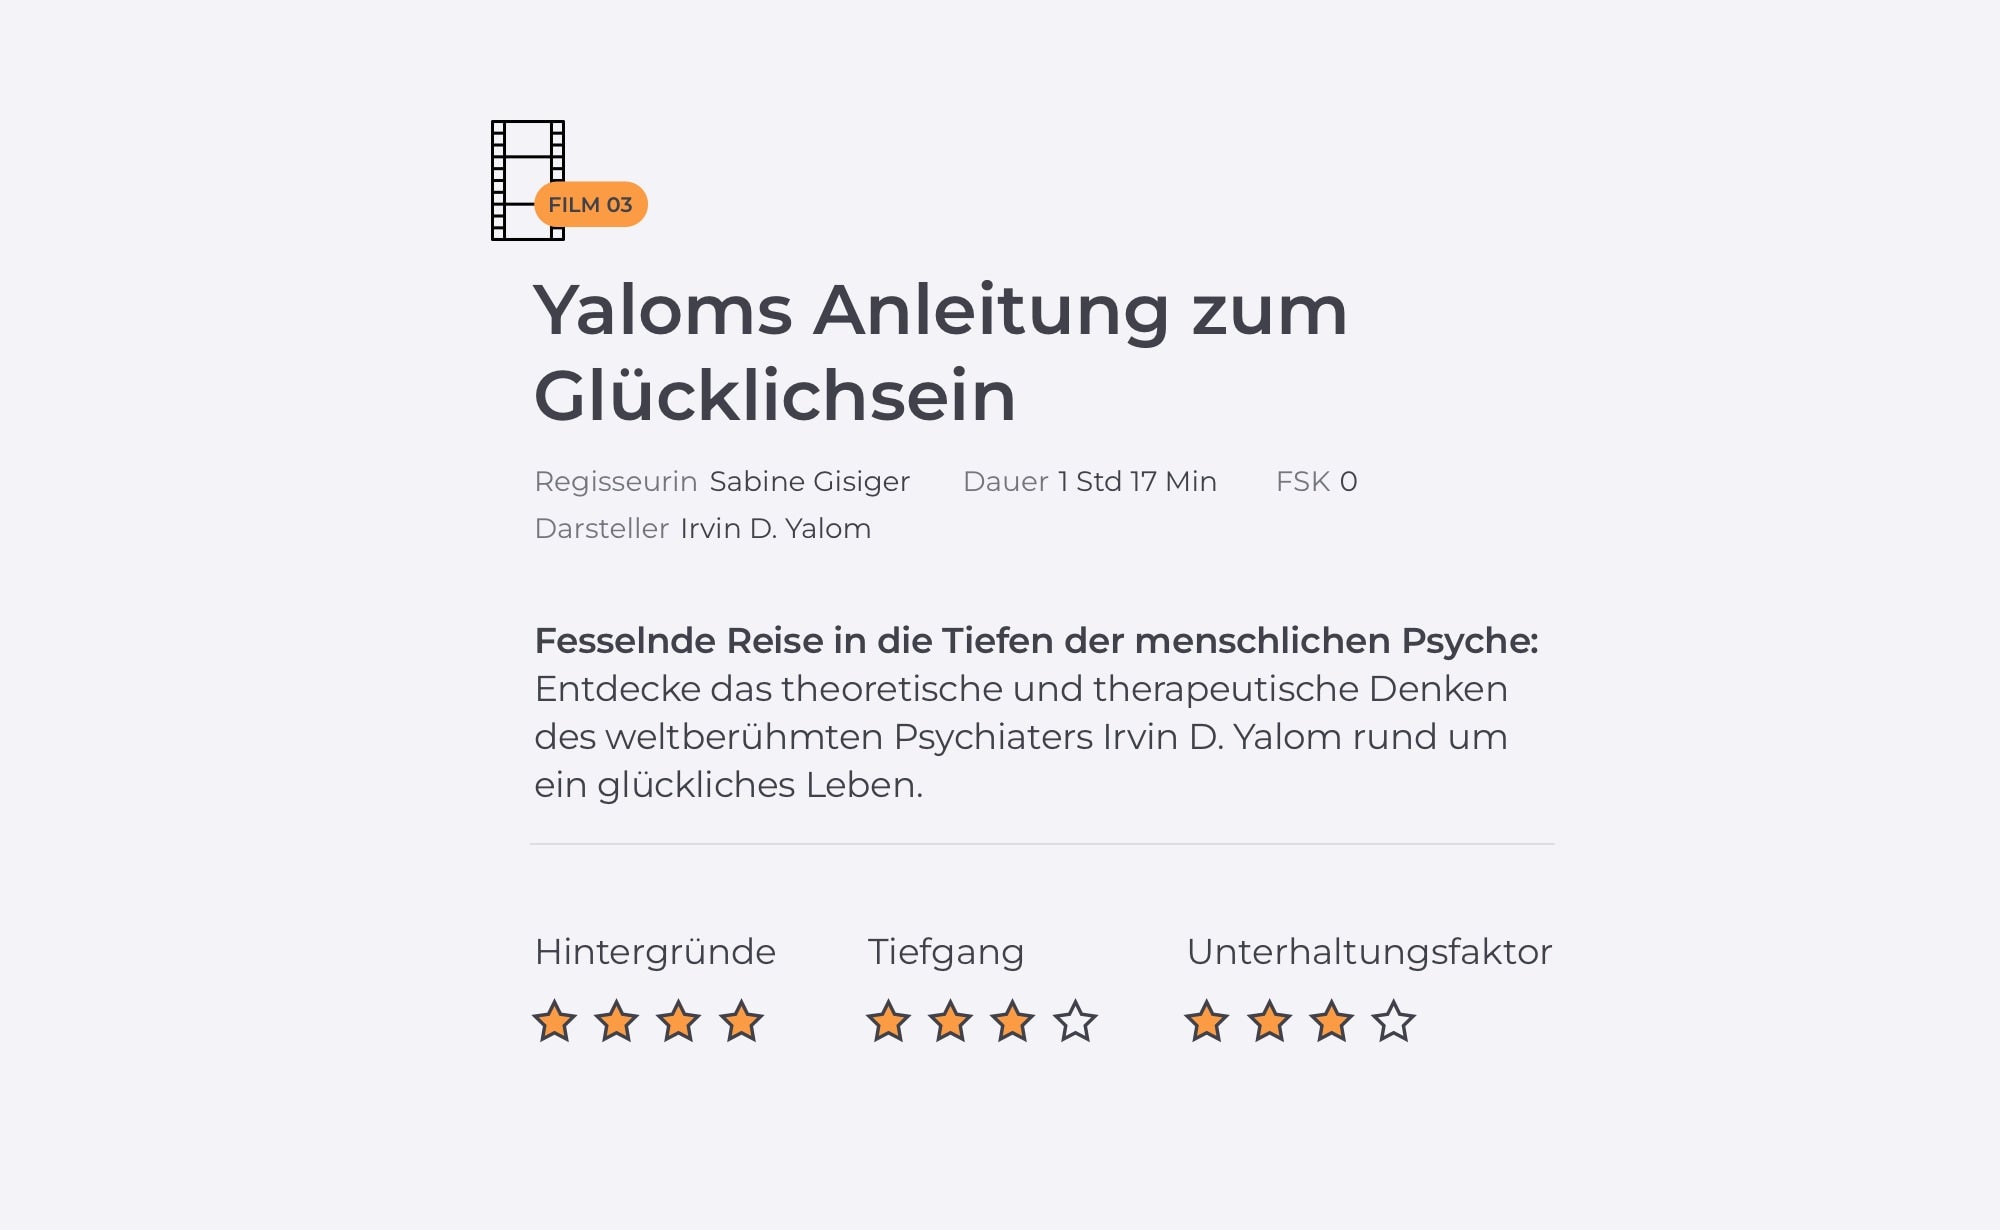 Infografik zur Dokumentation Yaloms Anleitung zum Glücklichsein.